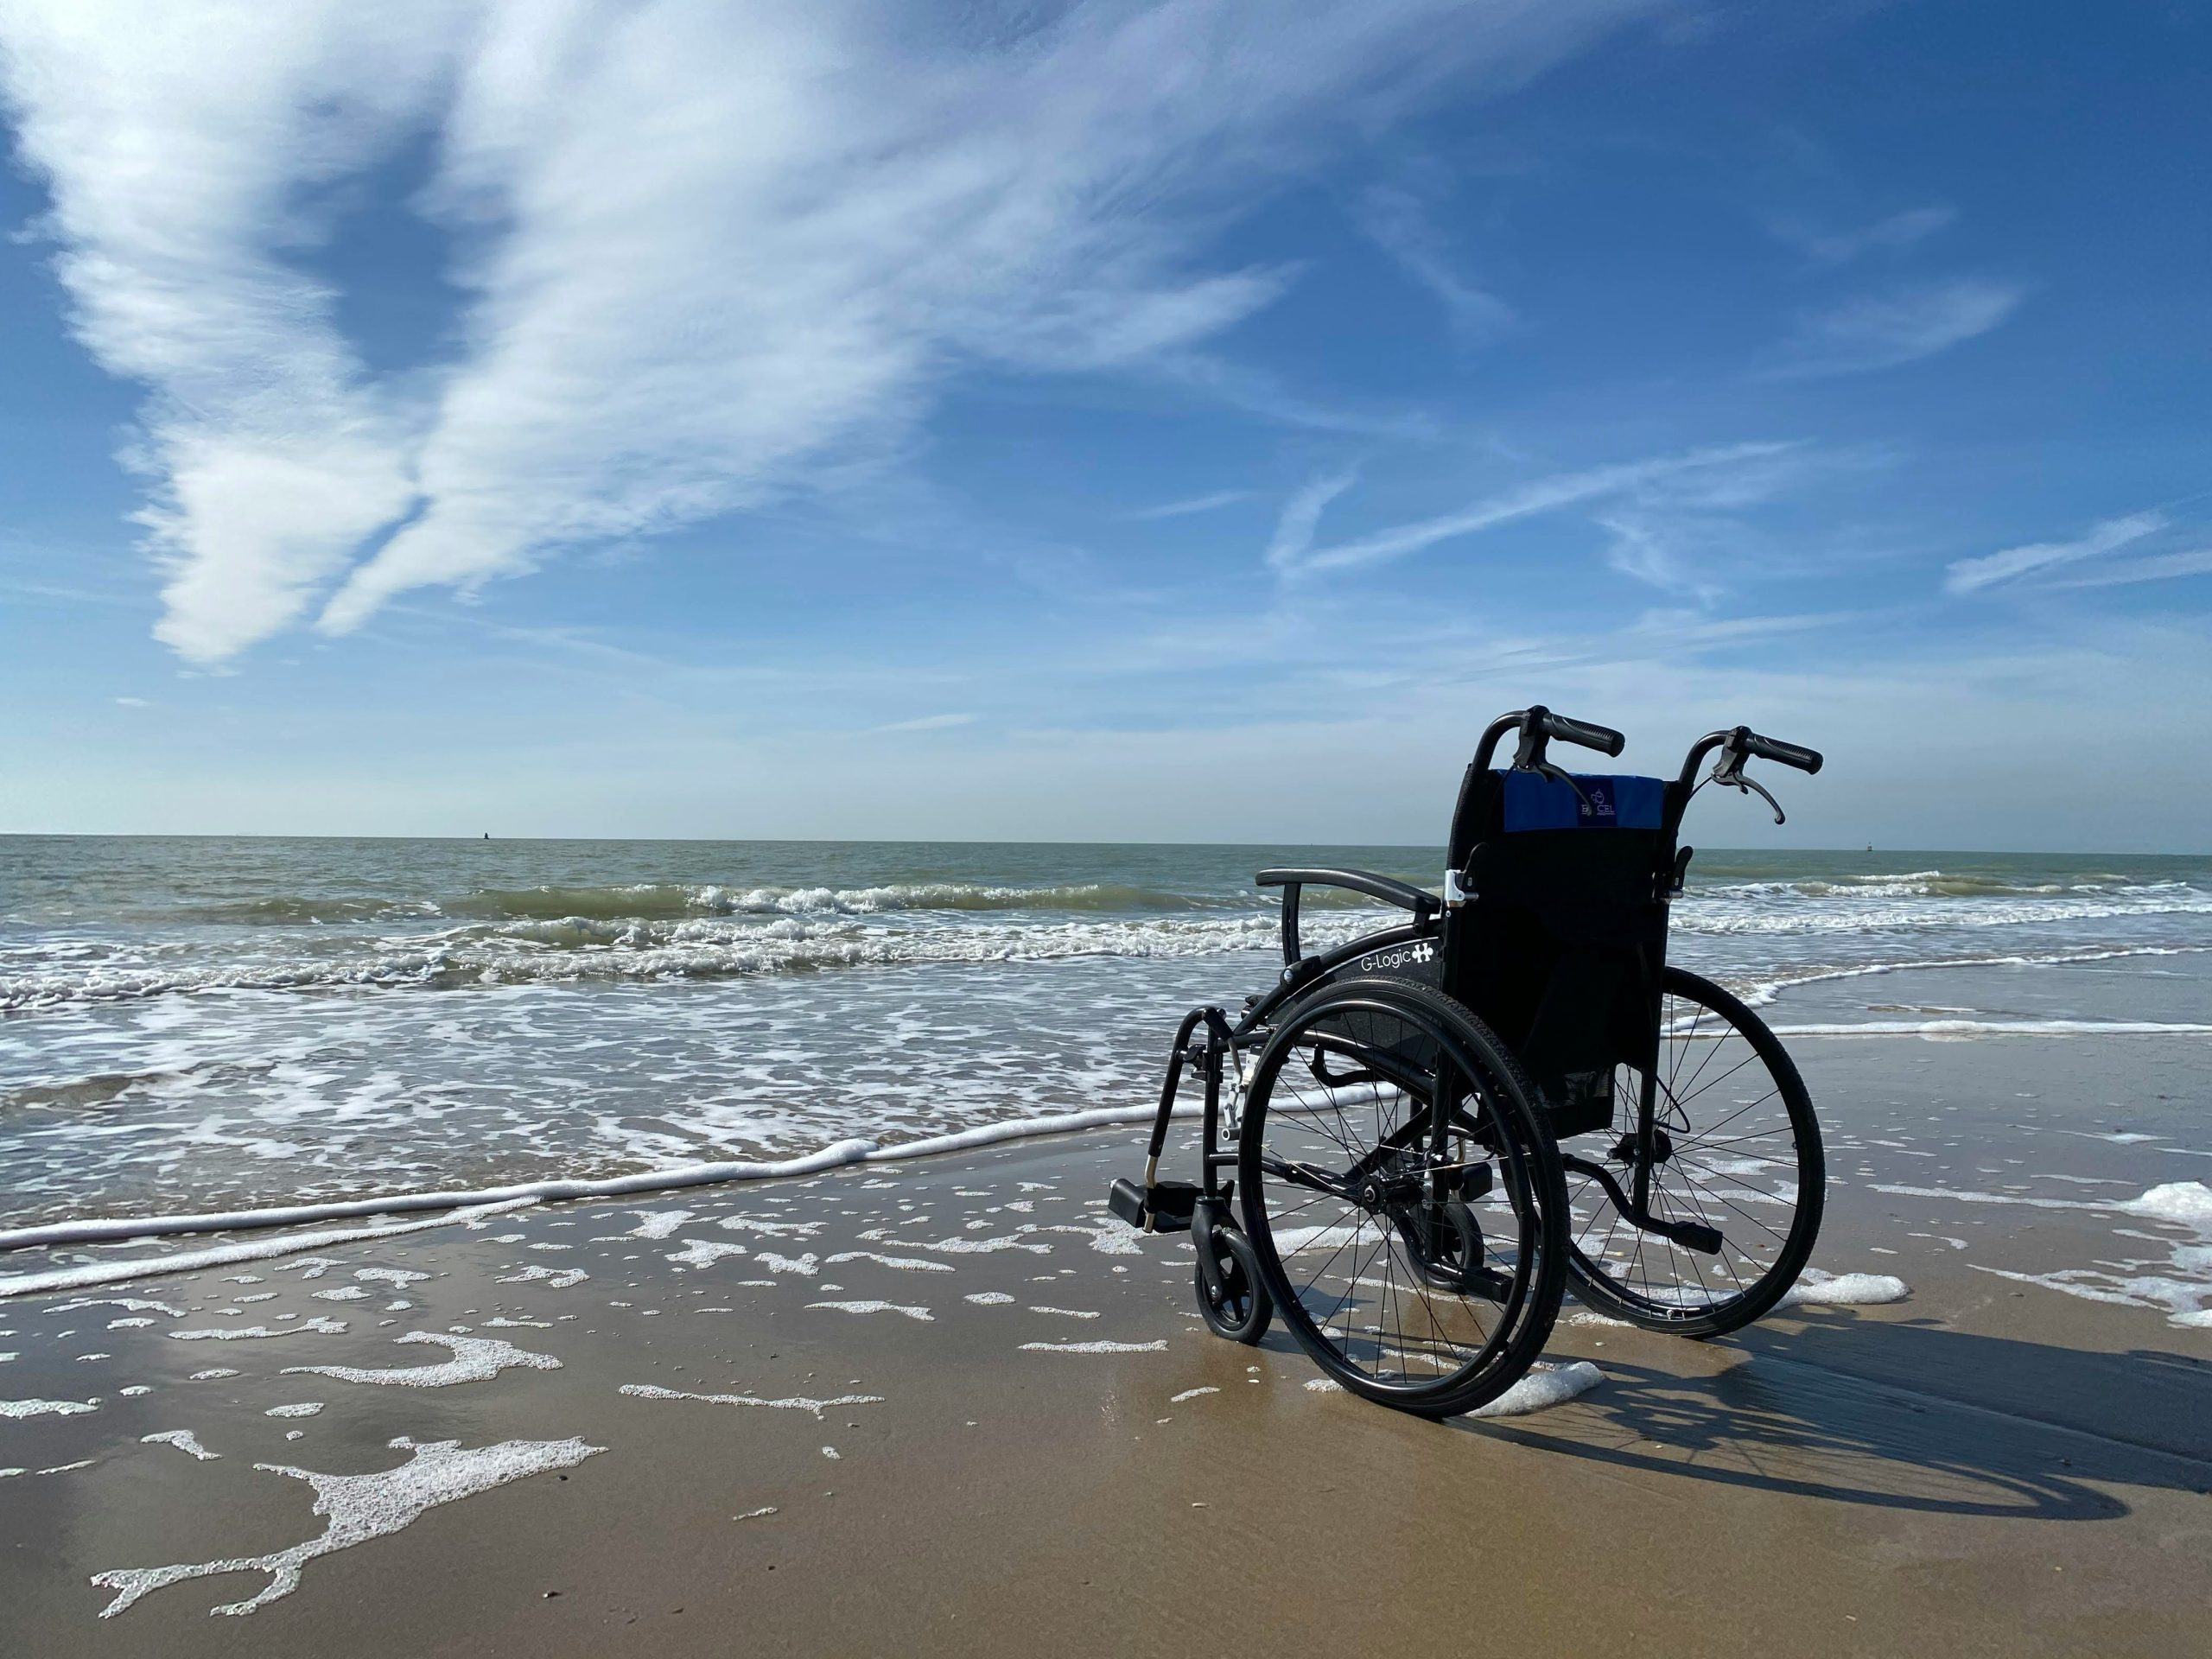 podróżowanie bez barier w dubaju – przewodnik dla osób z niepełnosprawnościami